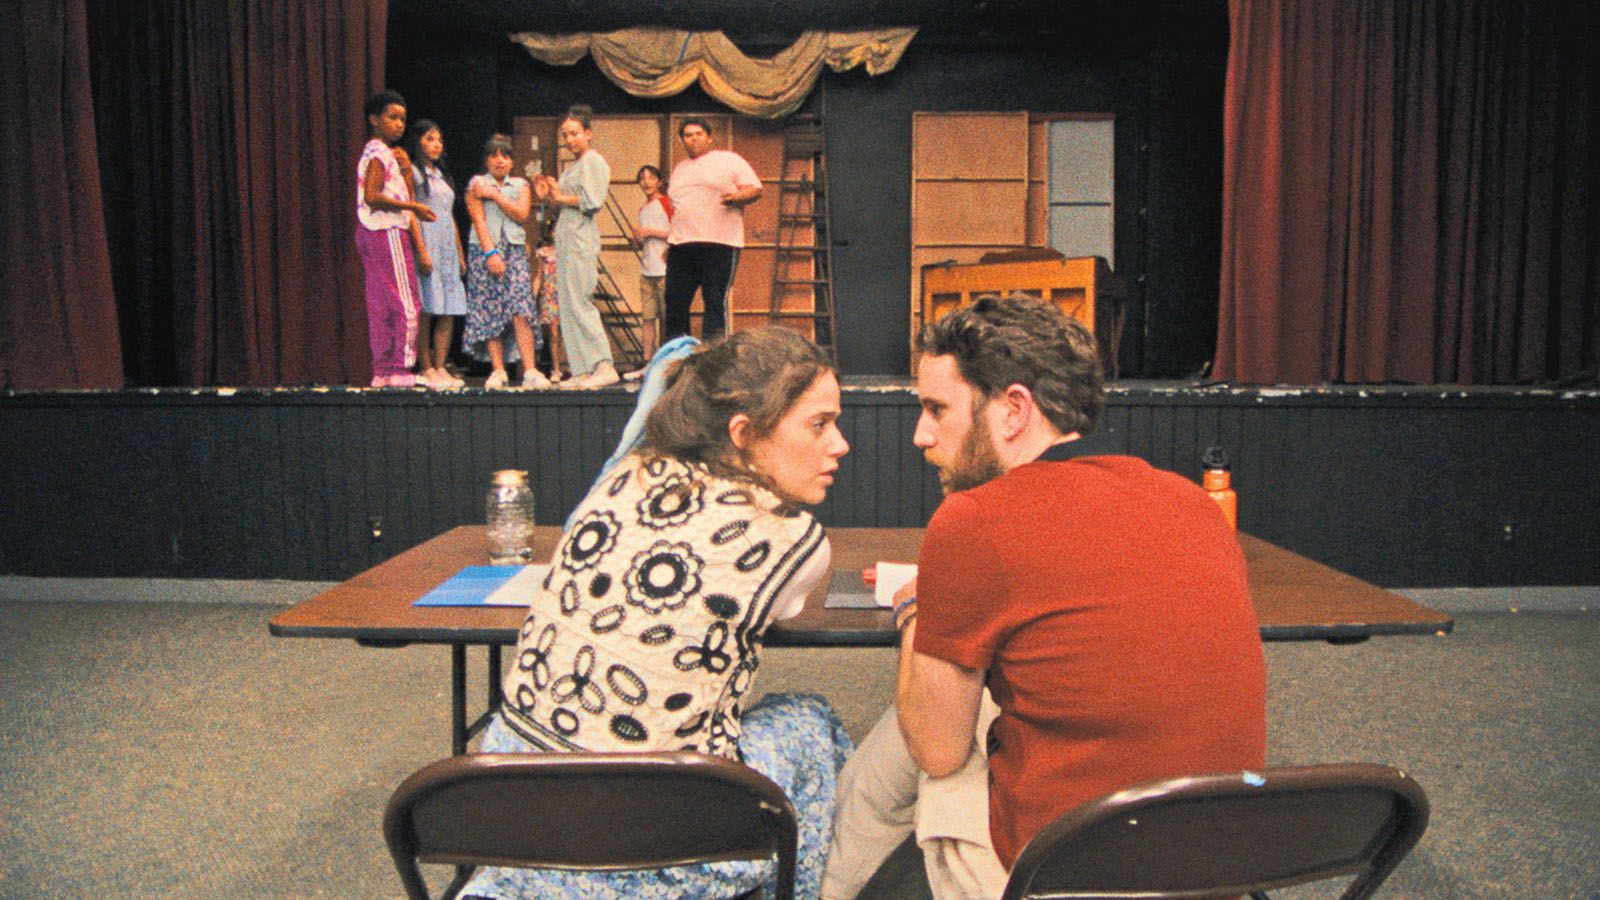 Mollie Gordon and Ben Platt star in Theater Camp.